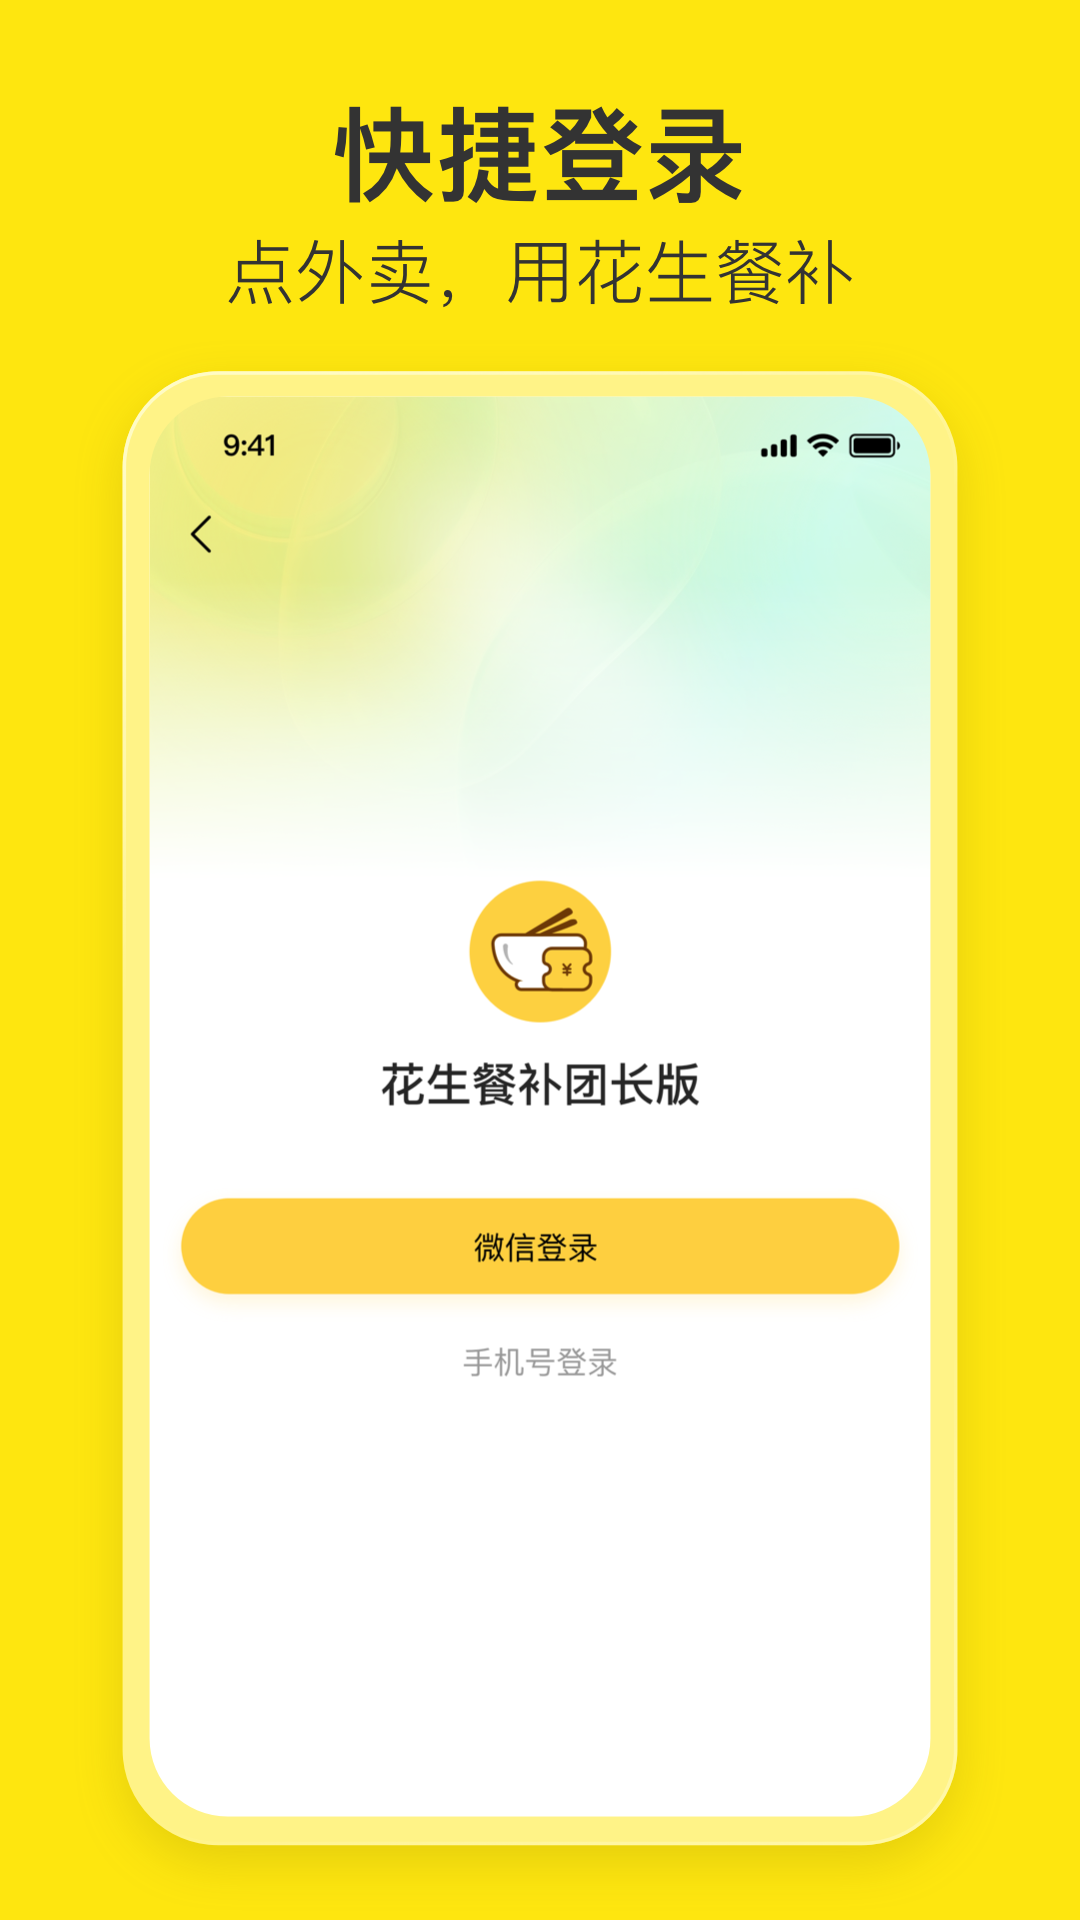 花生餐补团长端app下载,花生餐补团长端app官方版 v1.0.0